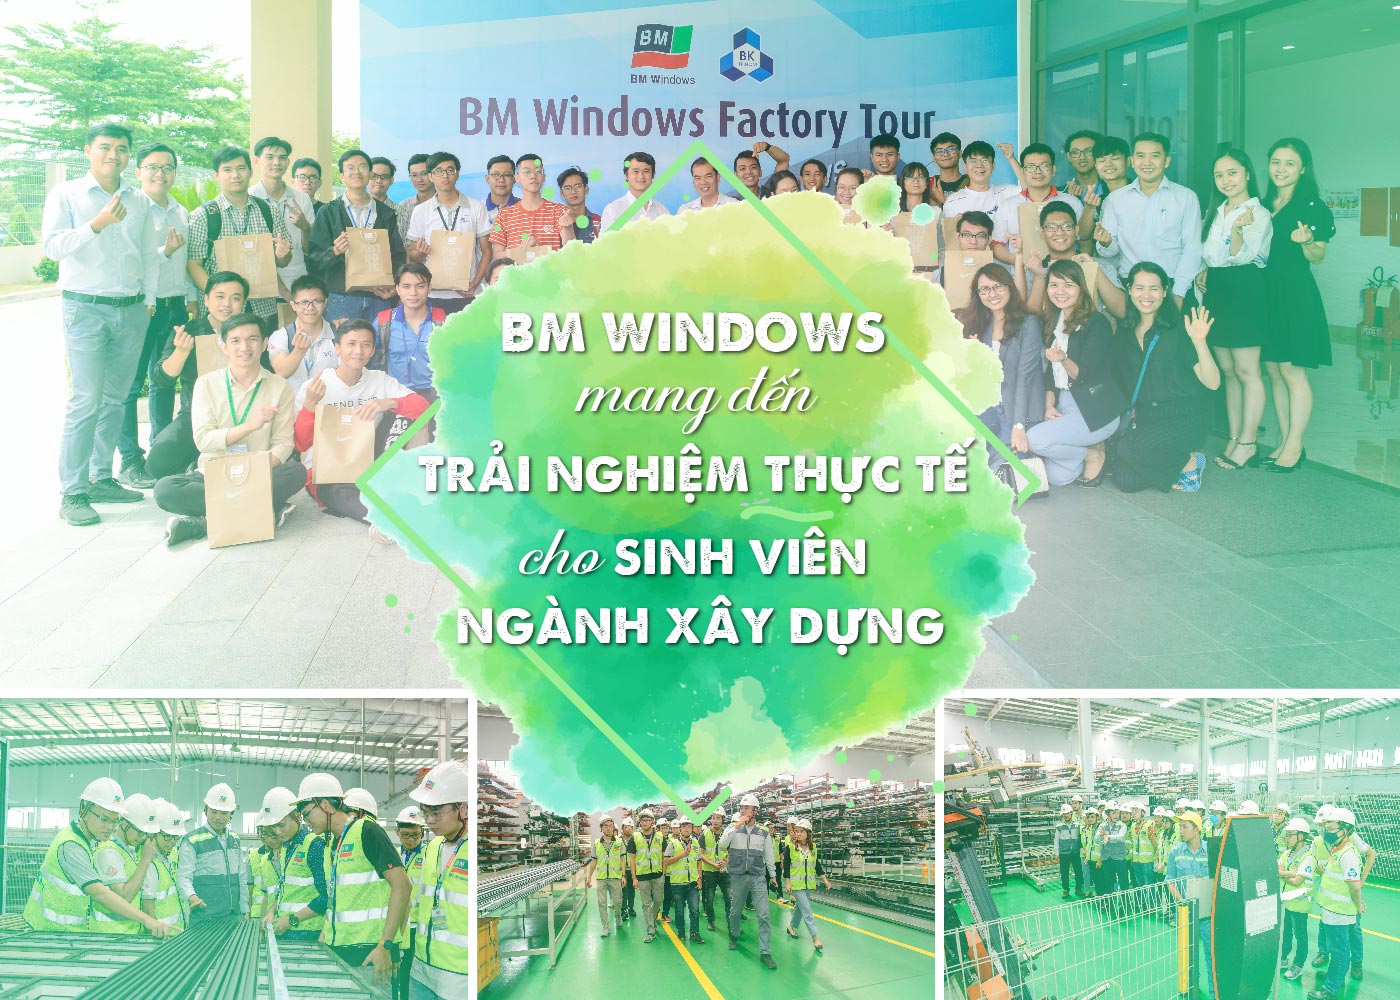 BM Windows mang đến trải nghiệm thực tế cho sinh viên ngành xây dựng - Ảnh 1